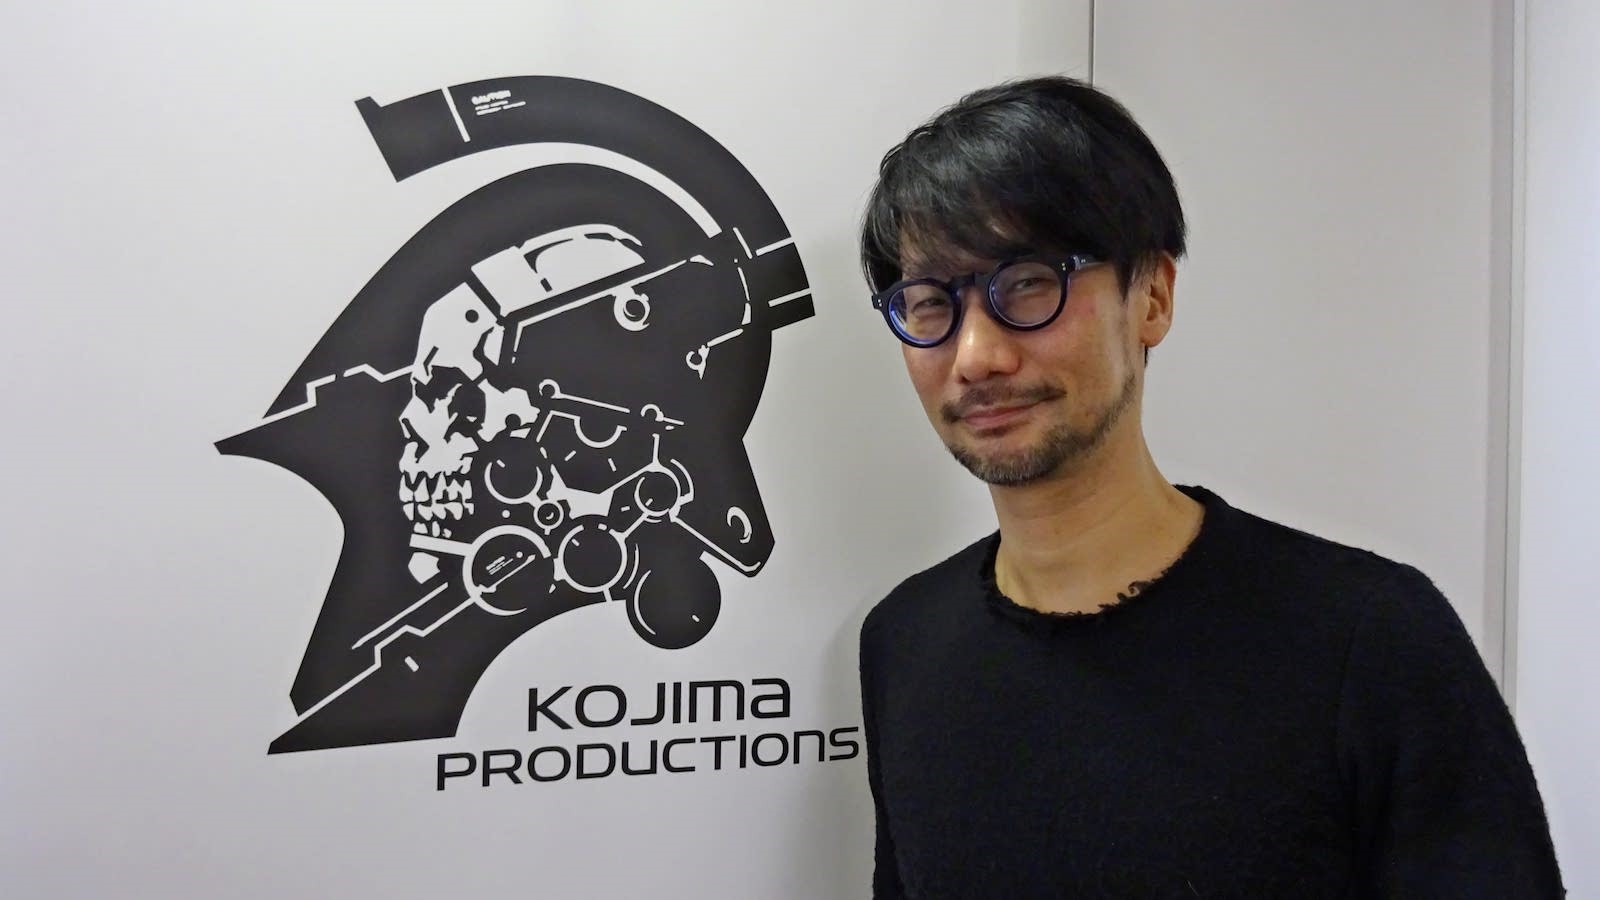 Kojima Productions potvrzuje práce na nové hře, hledají se vývojáři